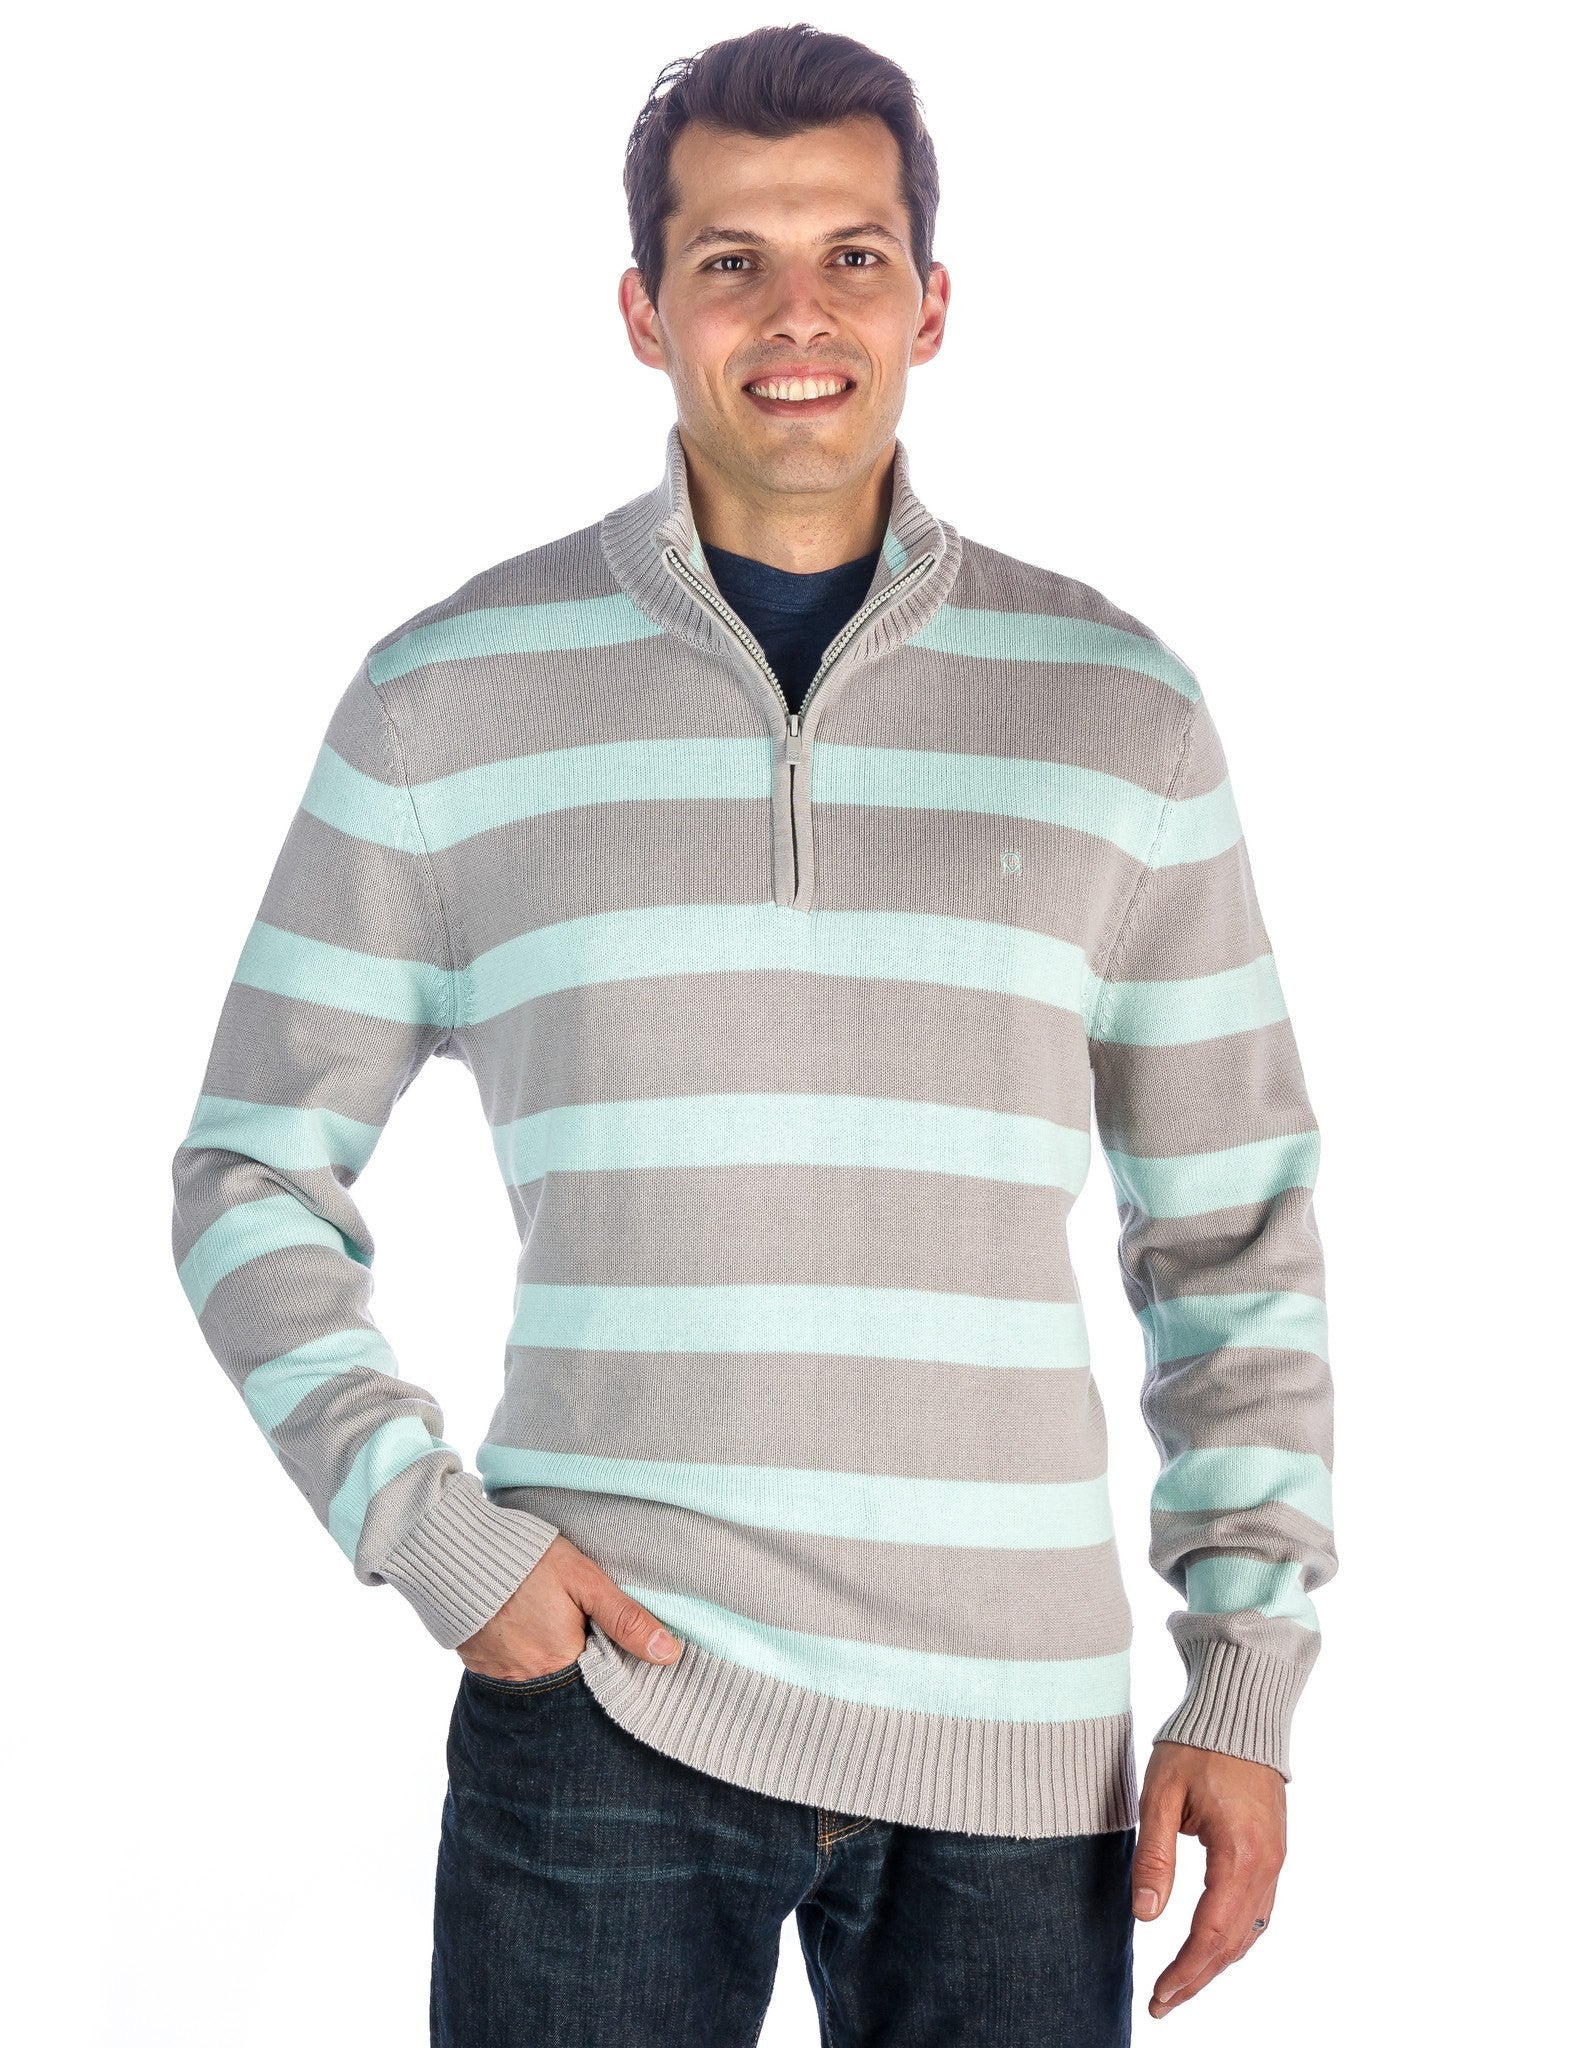 Noble Mount Men's 100% Cotton Half-Zip Pullover Sweater